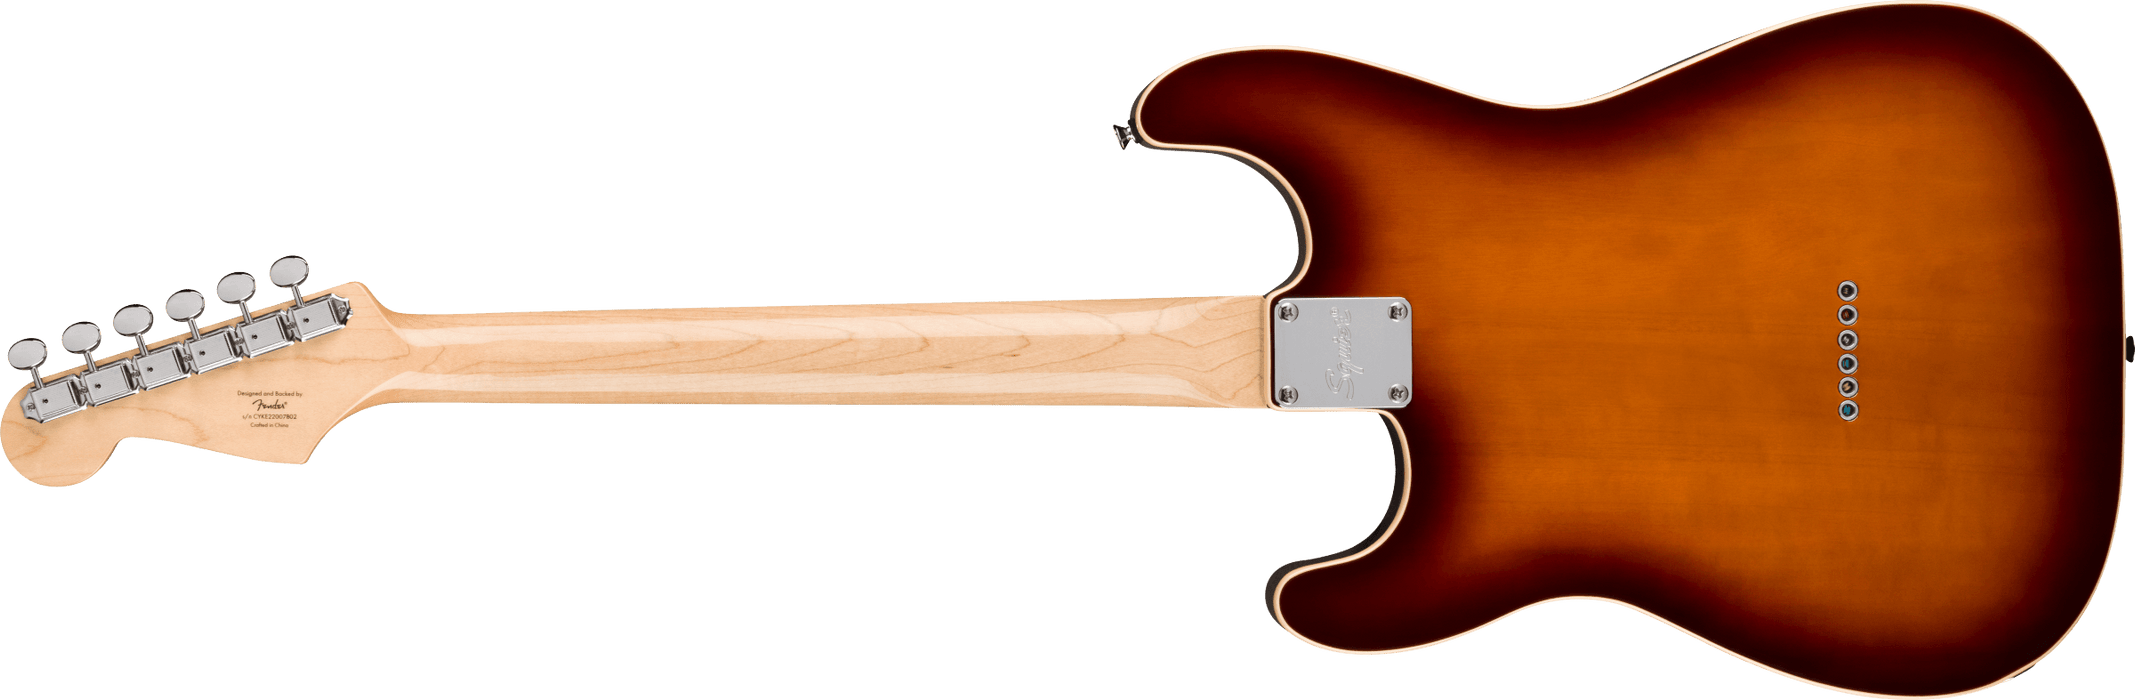 Fender Squier Paranormal Custom Nashville Stratocaster®, Laurel Fingerboard, Black Pickguard, Chocolate 2-Color Sunburst - Guitar Warehouse